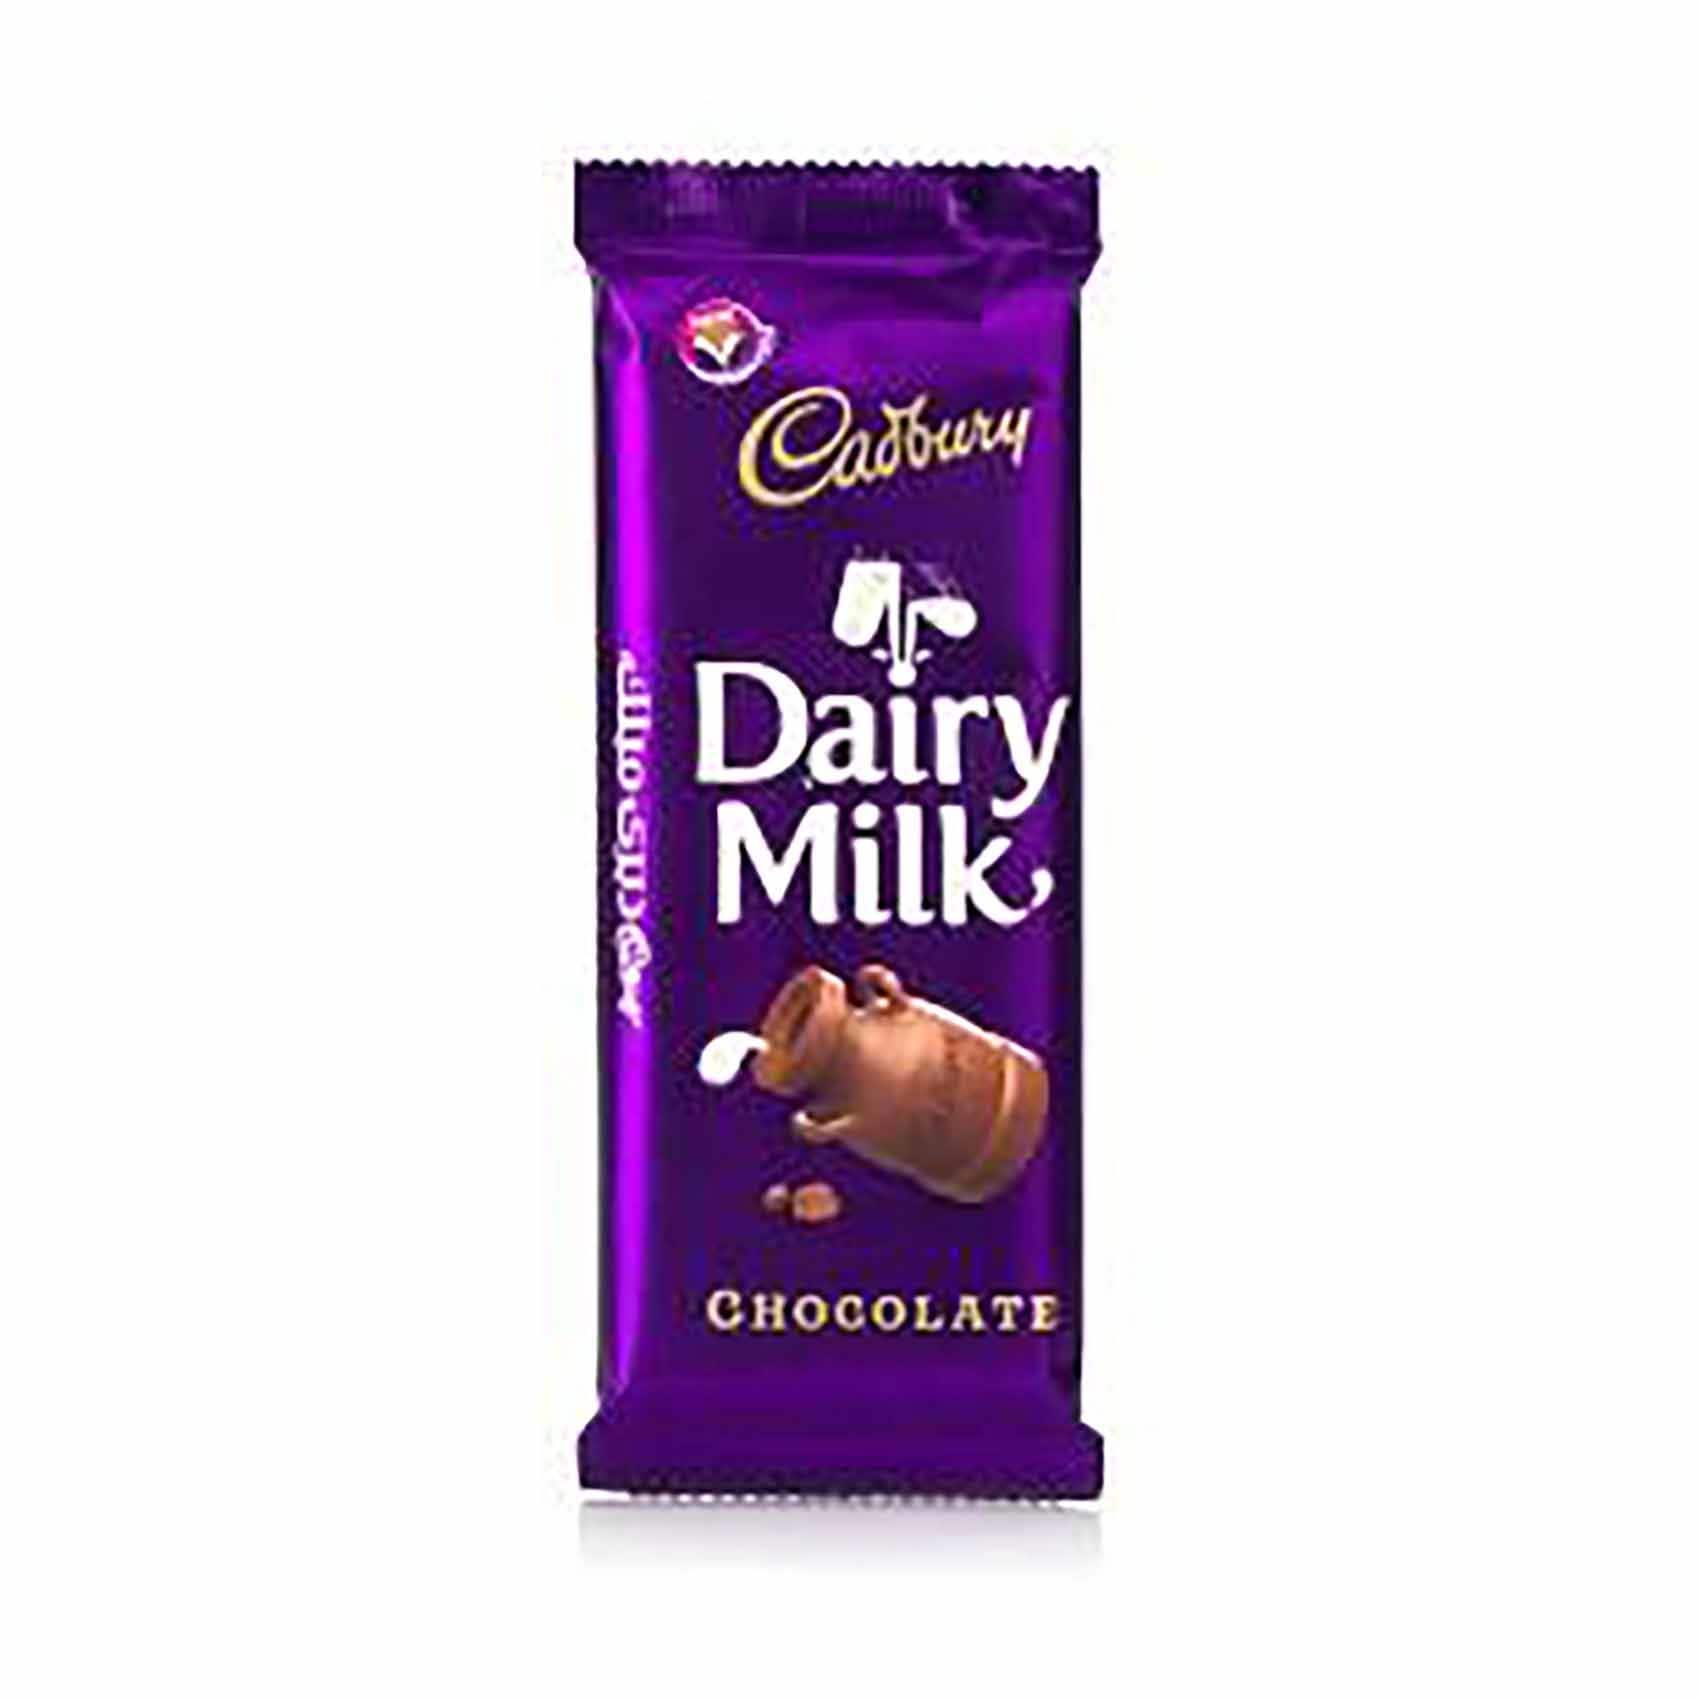 Cadbury Dairy Milk Chocolate 13gm Villezone | lupon.gov.ph